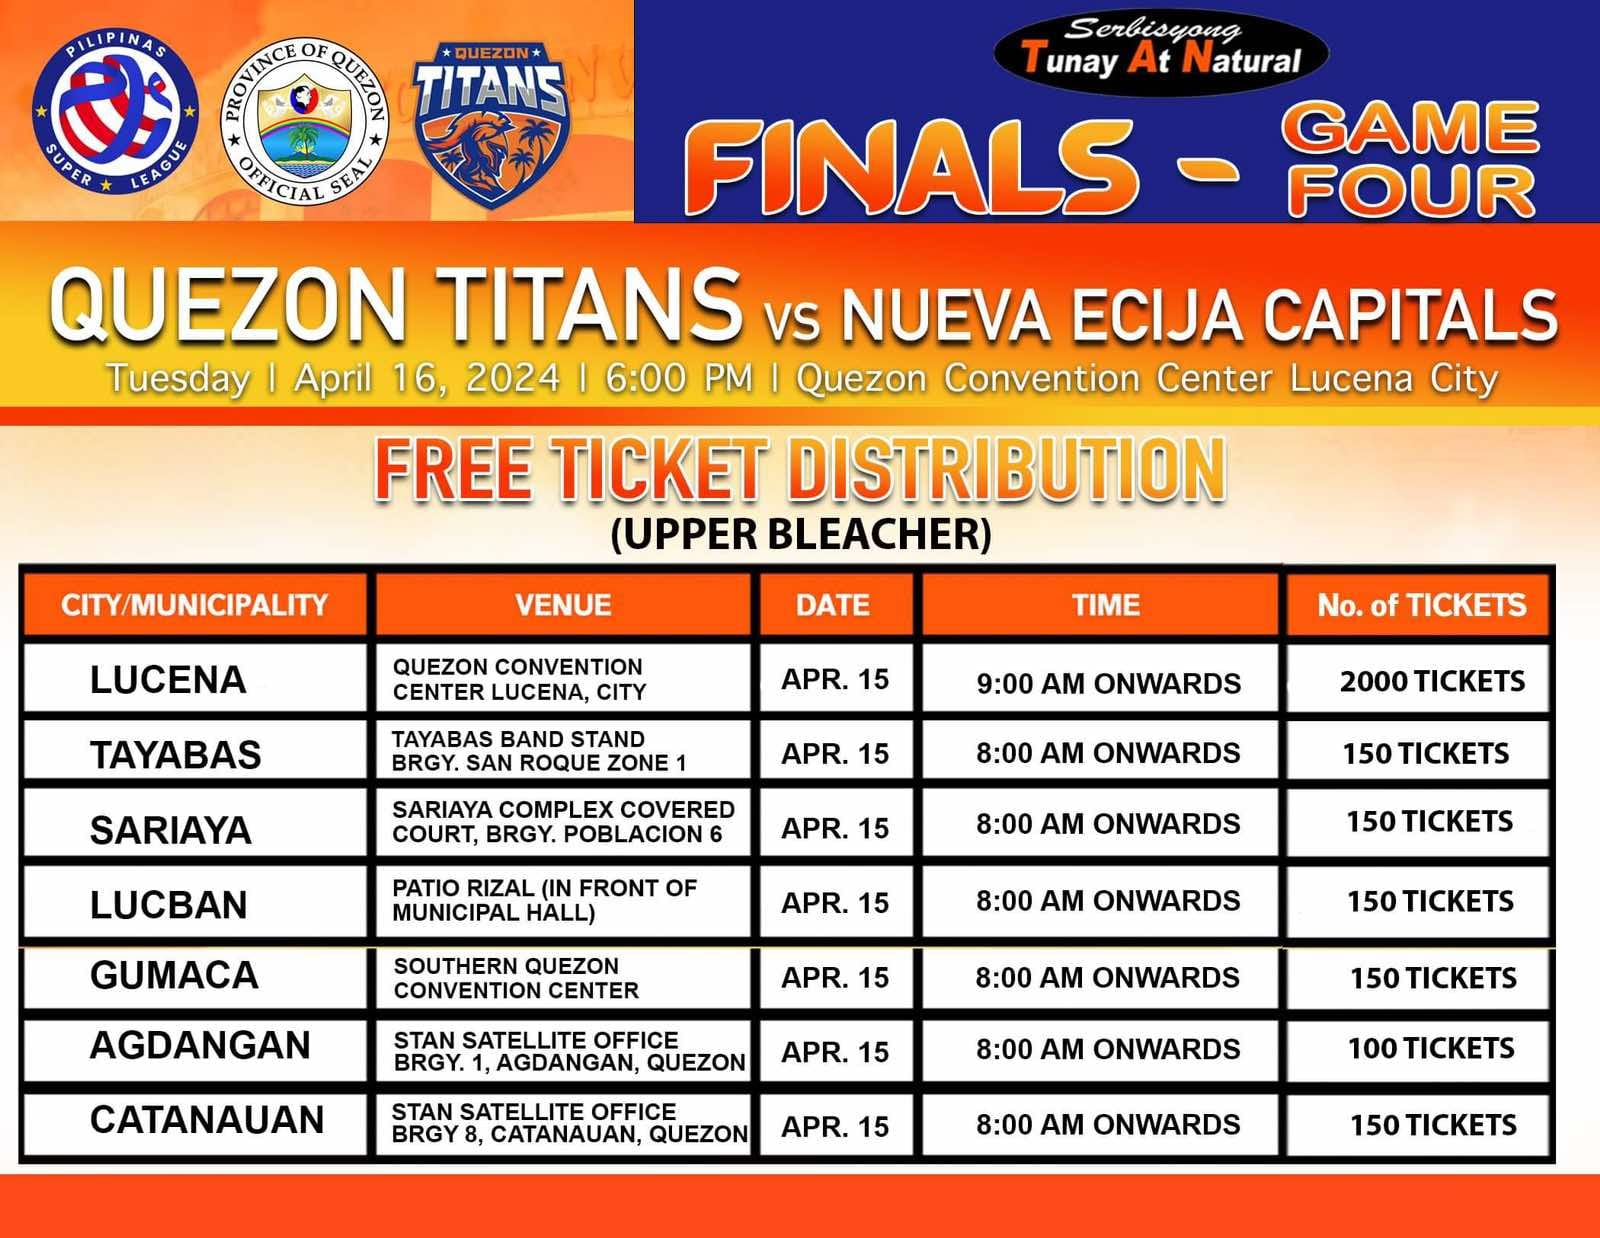 Quezon Titans vs Nueva Ecija Capitals Finals – Game Four Free Ticket Distribution